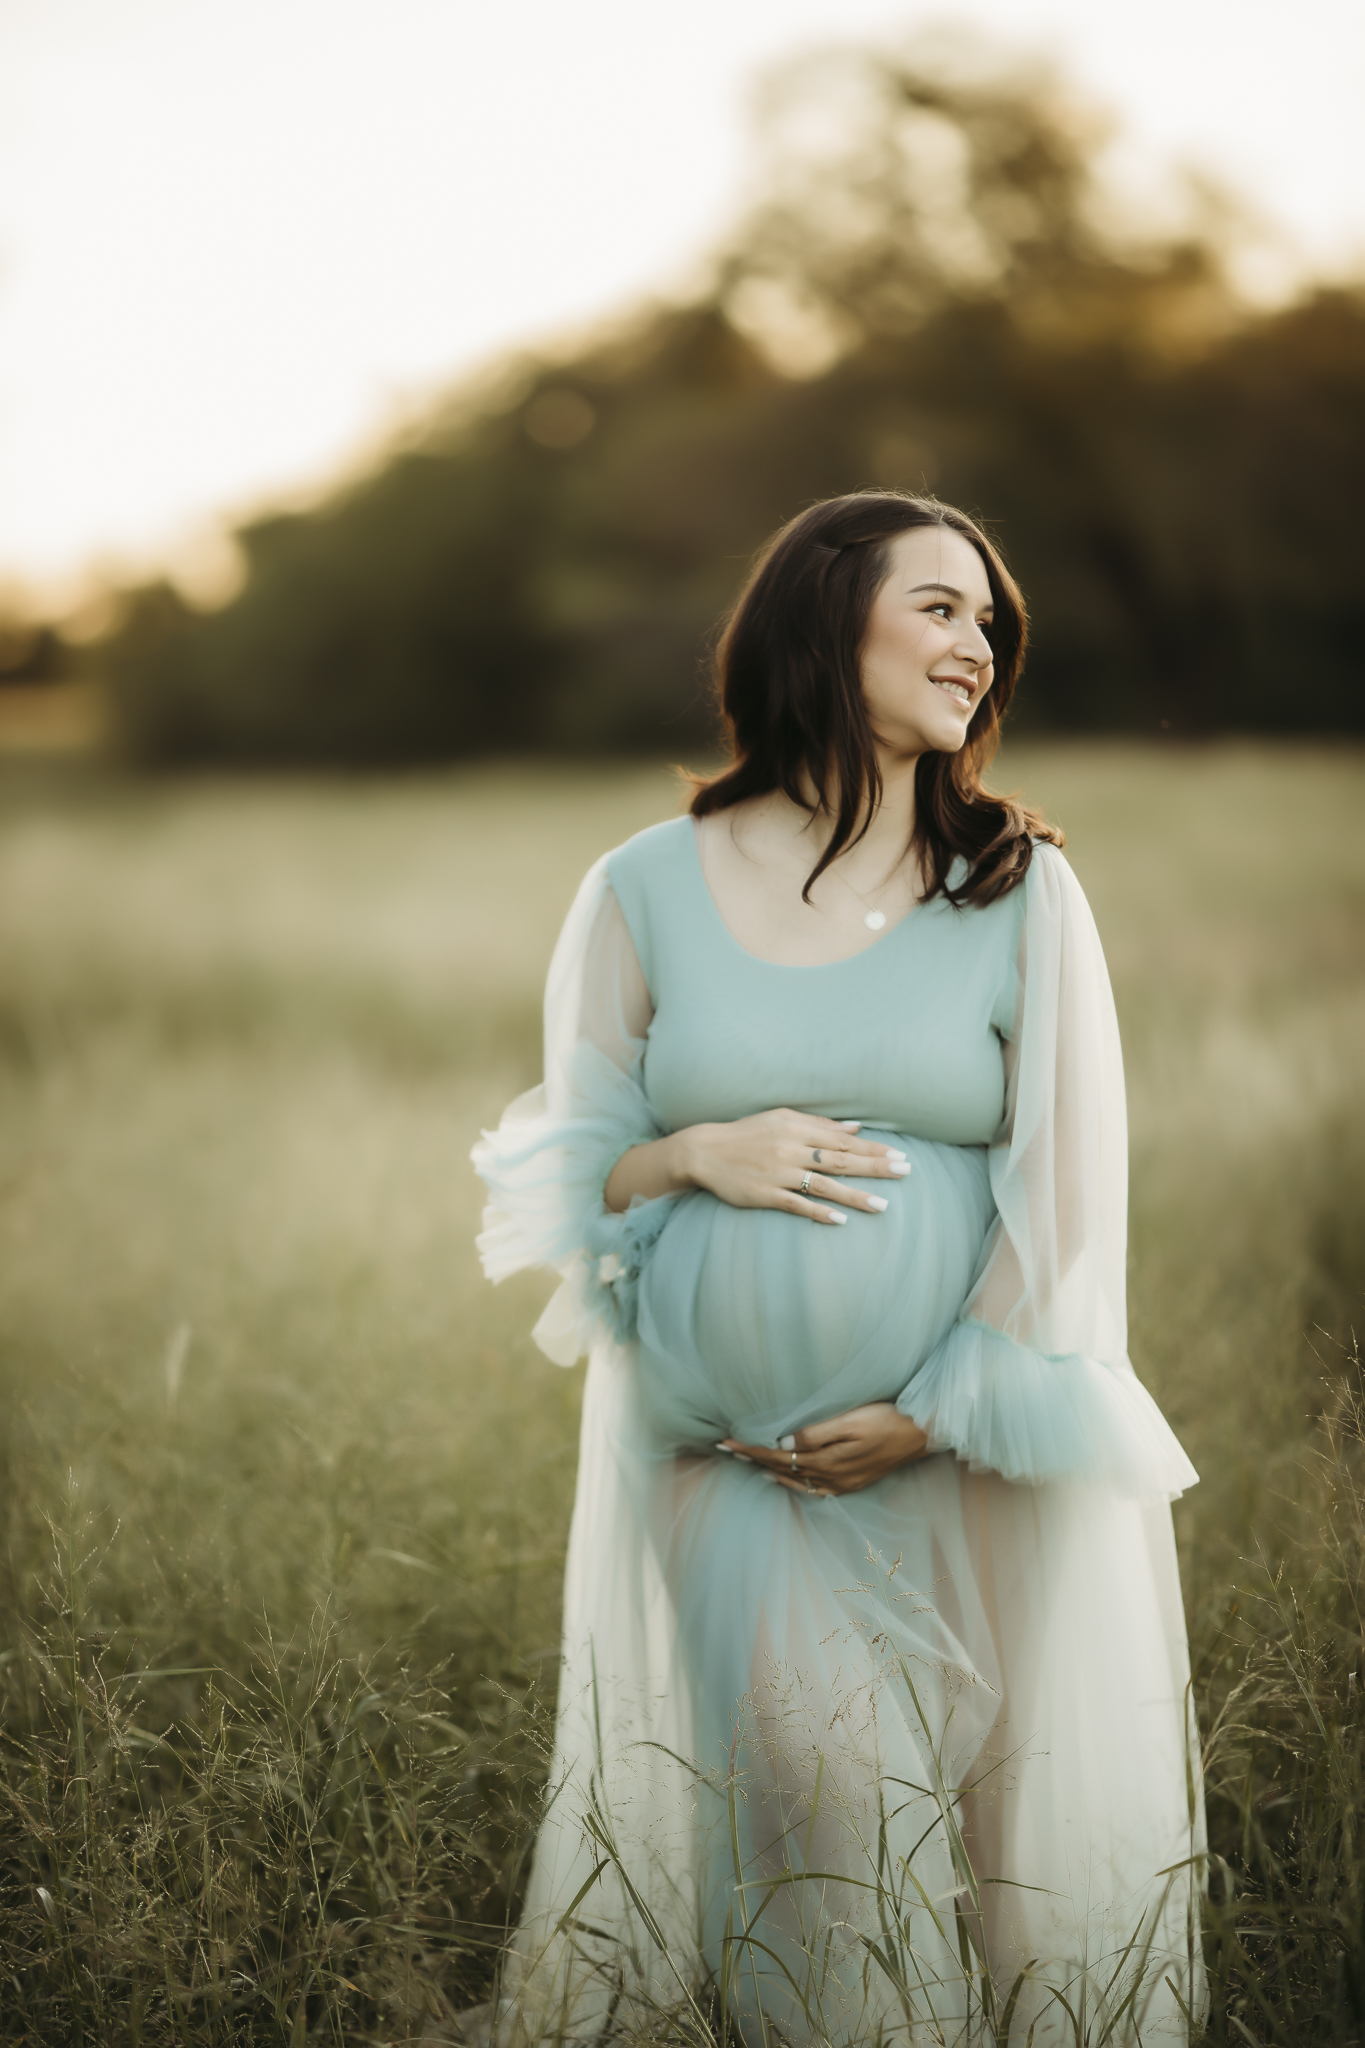 Abilene Maternity Photographer